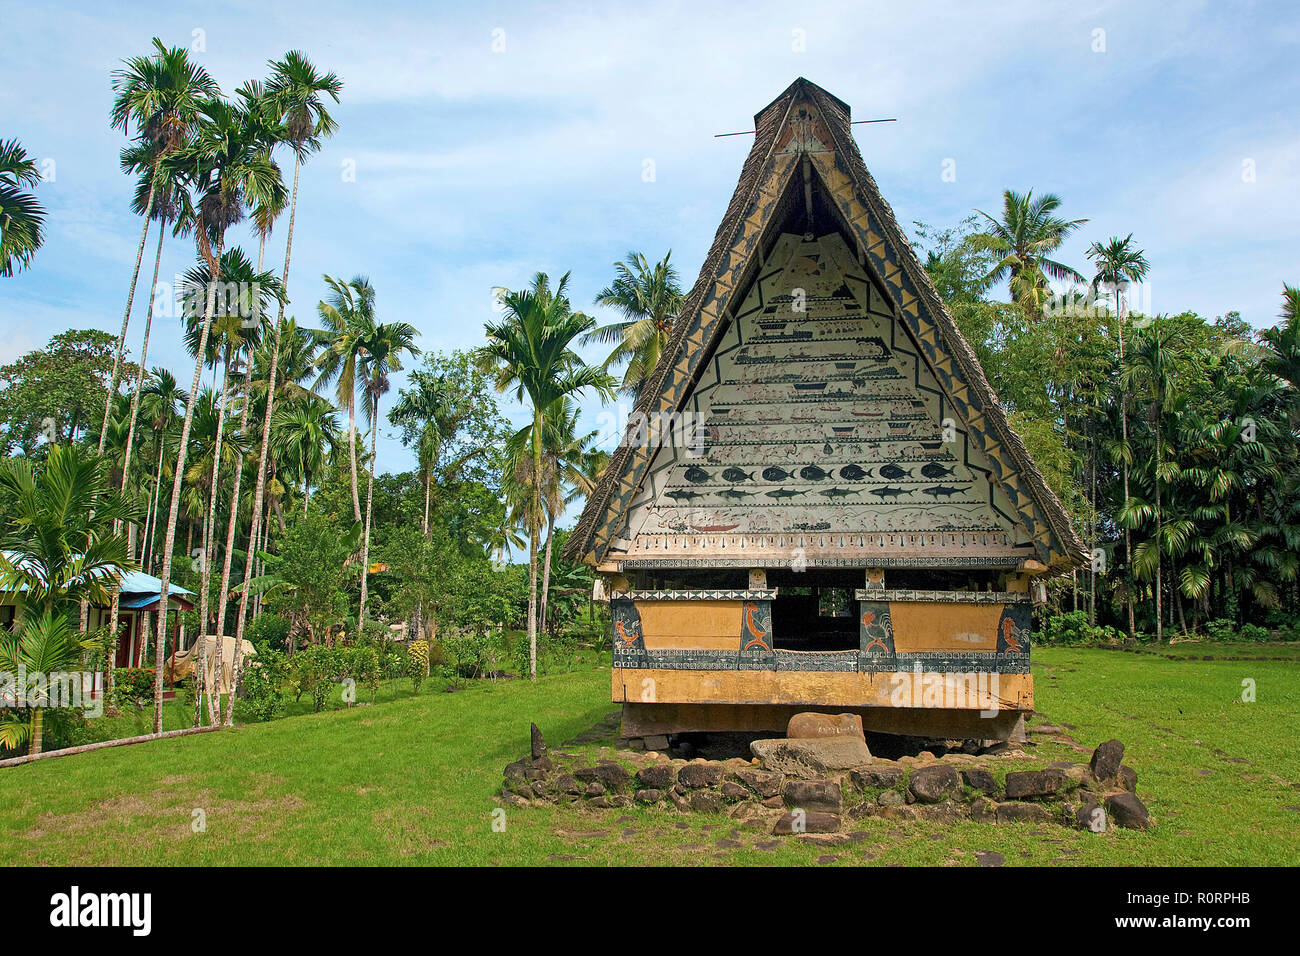 Traditionelles Männerhaus aus der Zeit des traditionellen Verwaltungssystems, Palau, Mikronesien |  Traditional men house on Palau island, Micronesia Stock Photo